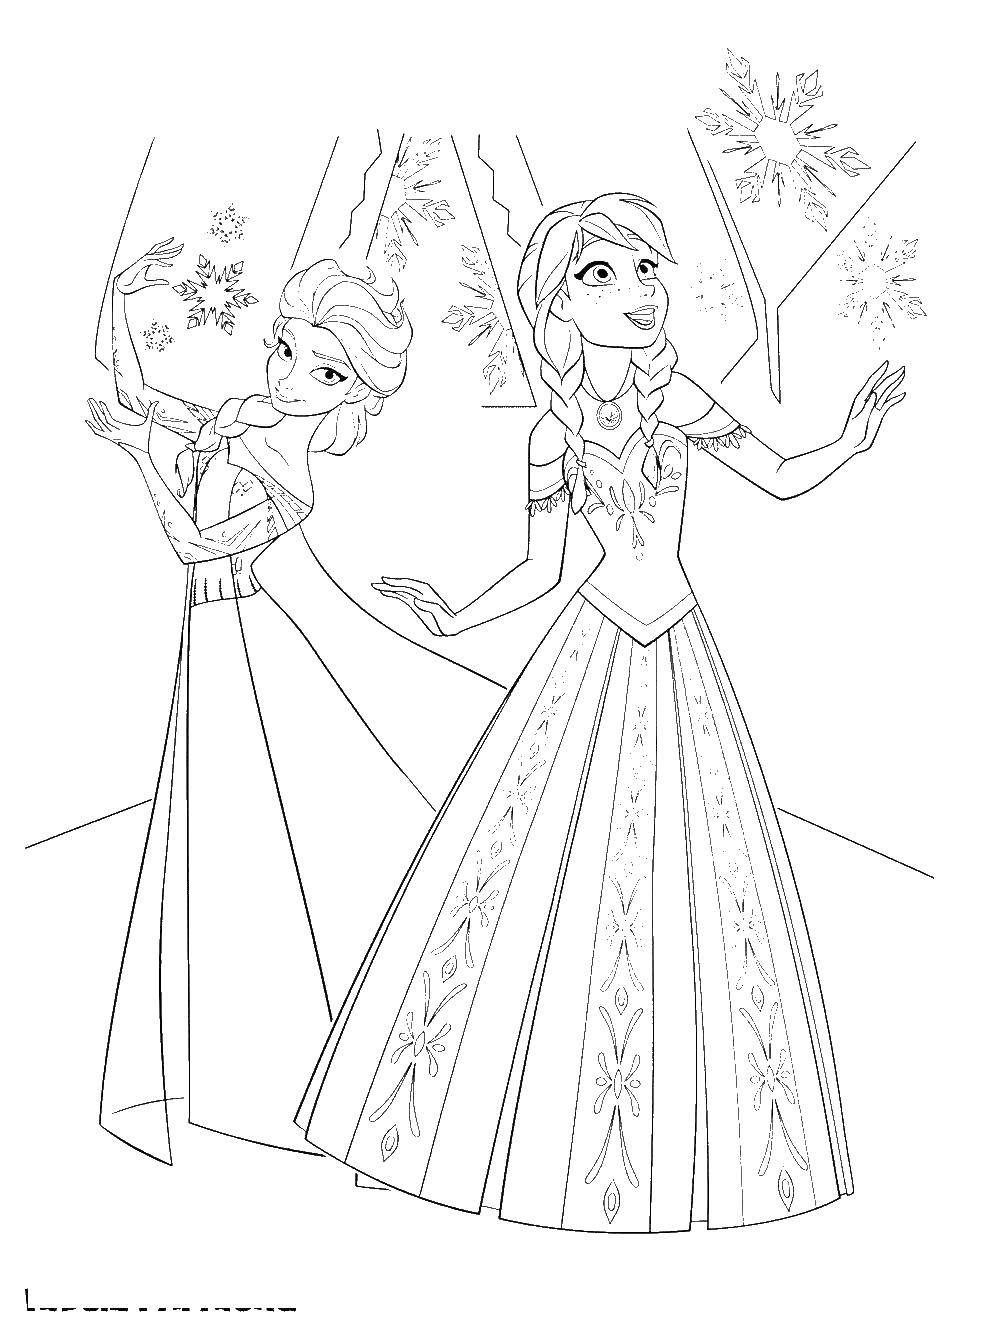 Coloring Anna and Elsa catch snowballs. Category Disney cartoons. Tags:  Anna , Elsa.